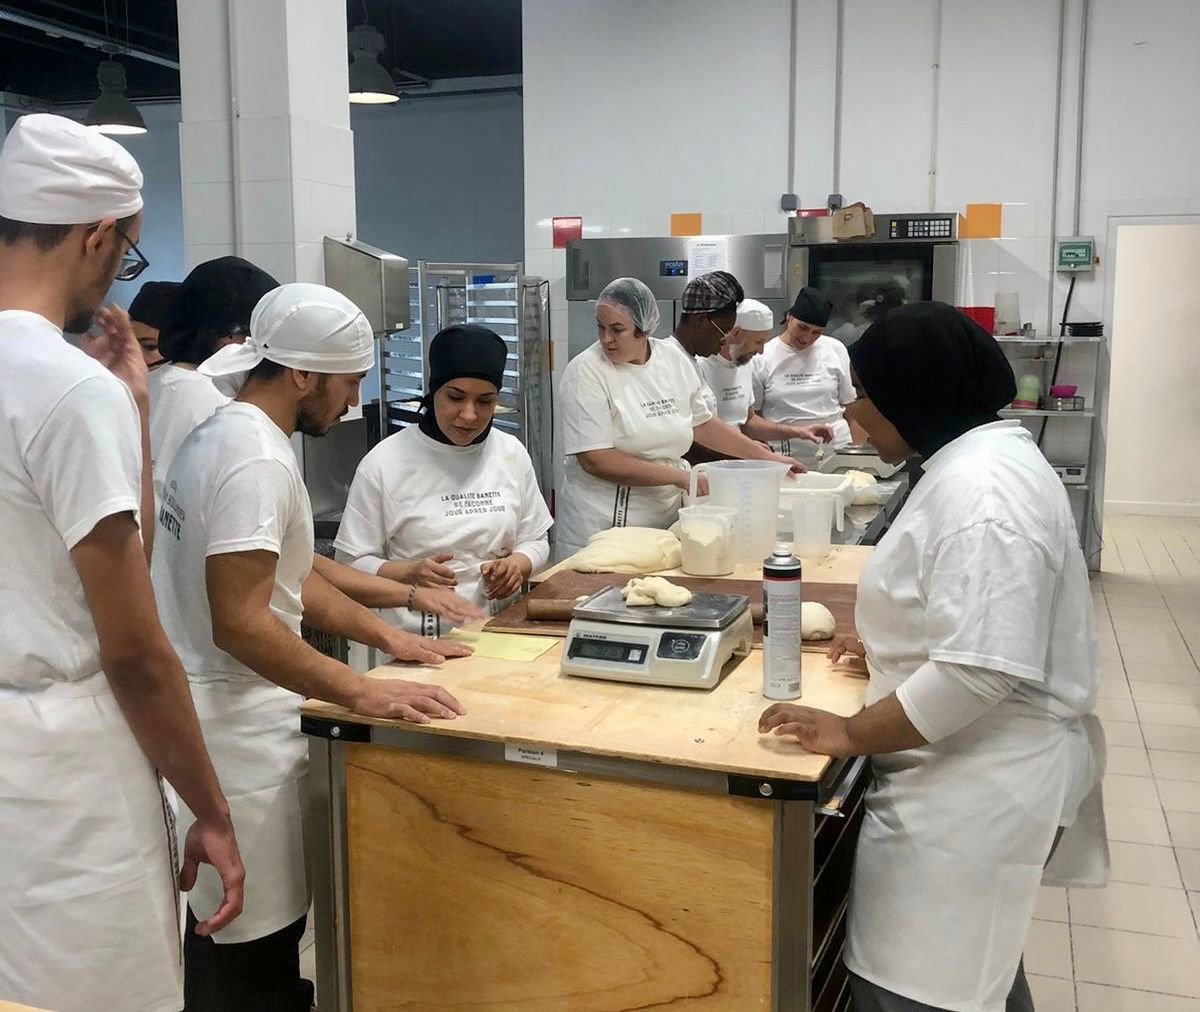 Fondée en 2012, l'école Cuisine : mode d'emploi(s) de Thierry Marx, célèbre chef étoilé, forme des personnes aux métiers de l'hôtellerie.